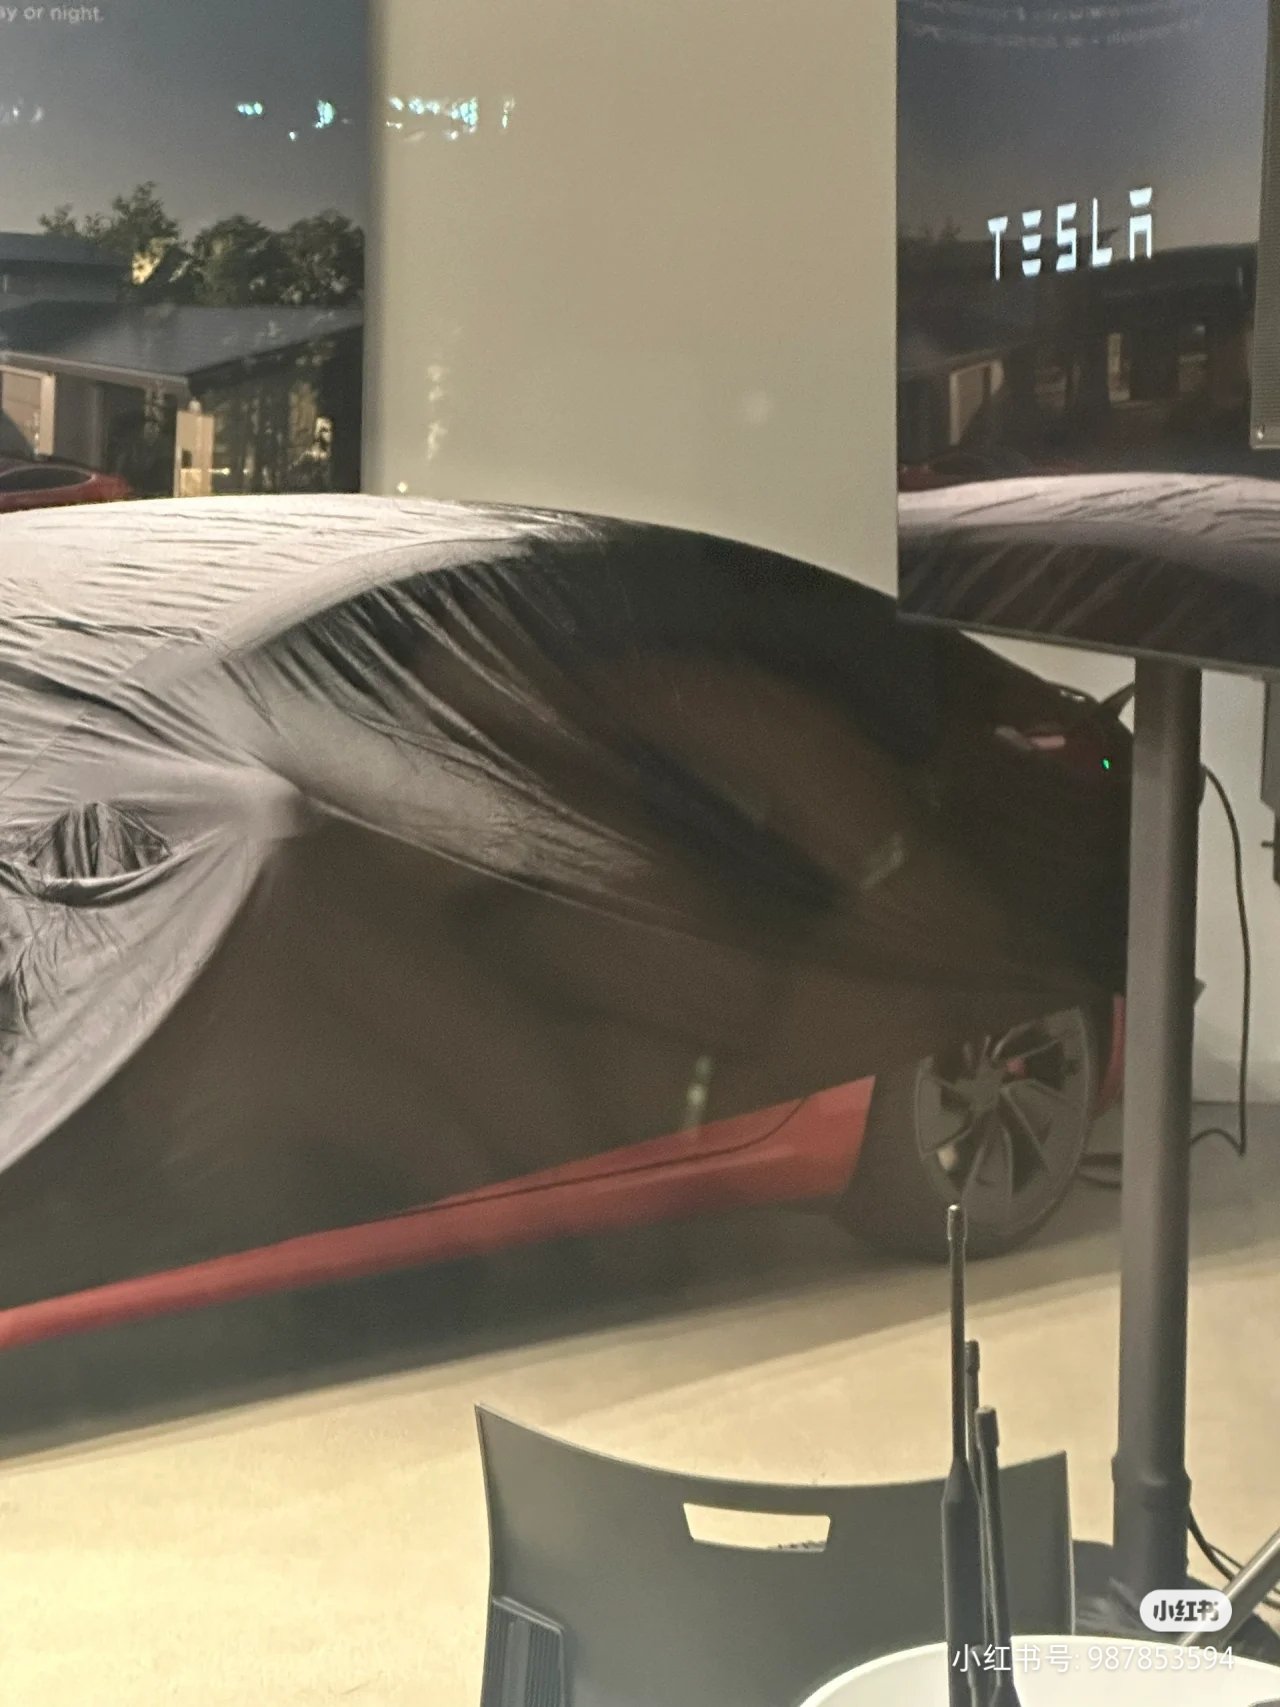 新款高性能版 Model 3 亮相加利福尼亚州活动现场